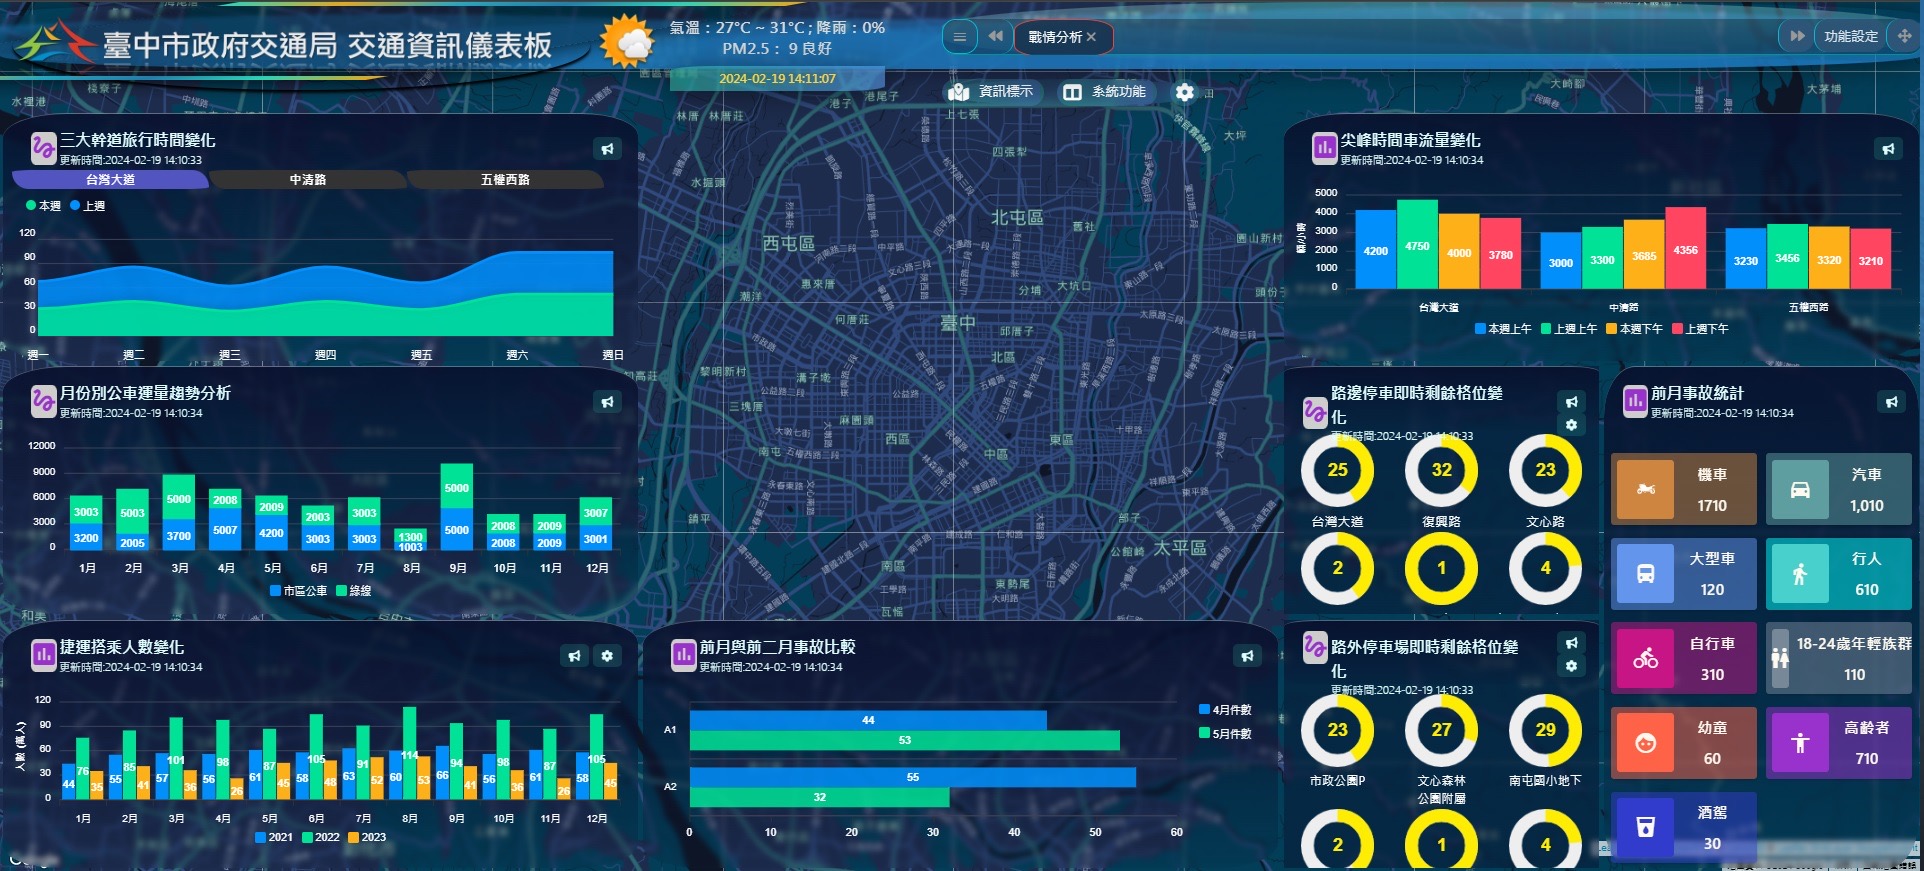 優化中部路網 中市交通局推動「五心級」智慧交通管理系統